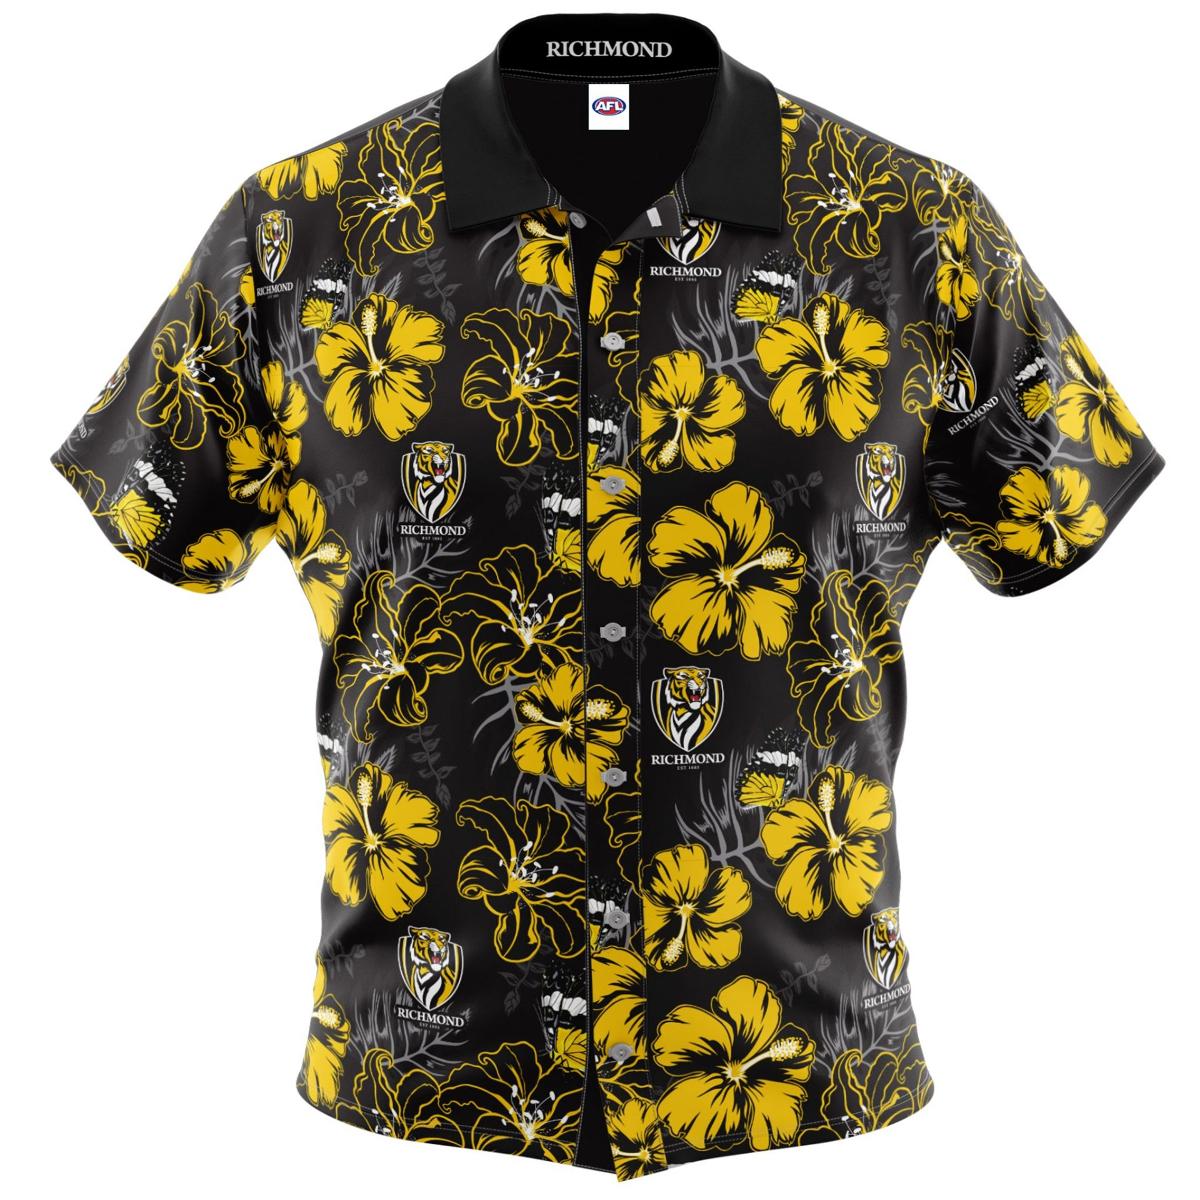 Afl Richmond Tigers Black Yellow Floral Hawaiian Shirt Best For Men Women Fans